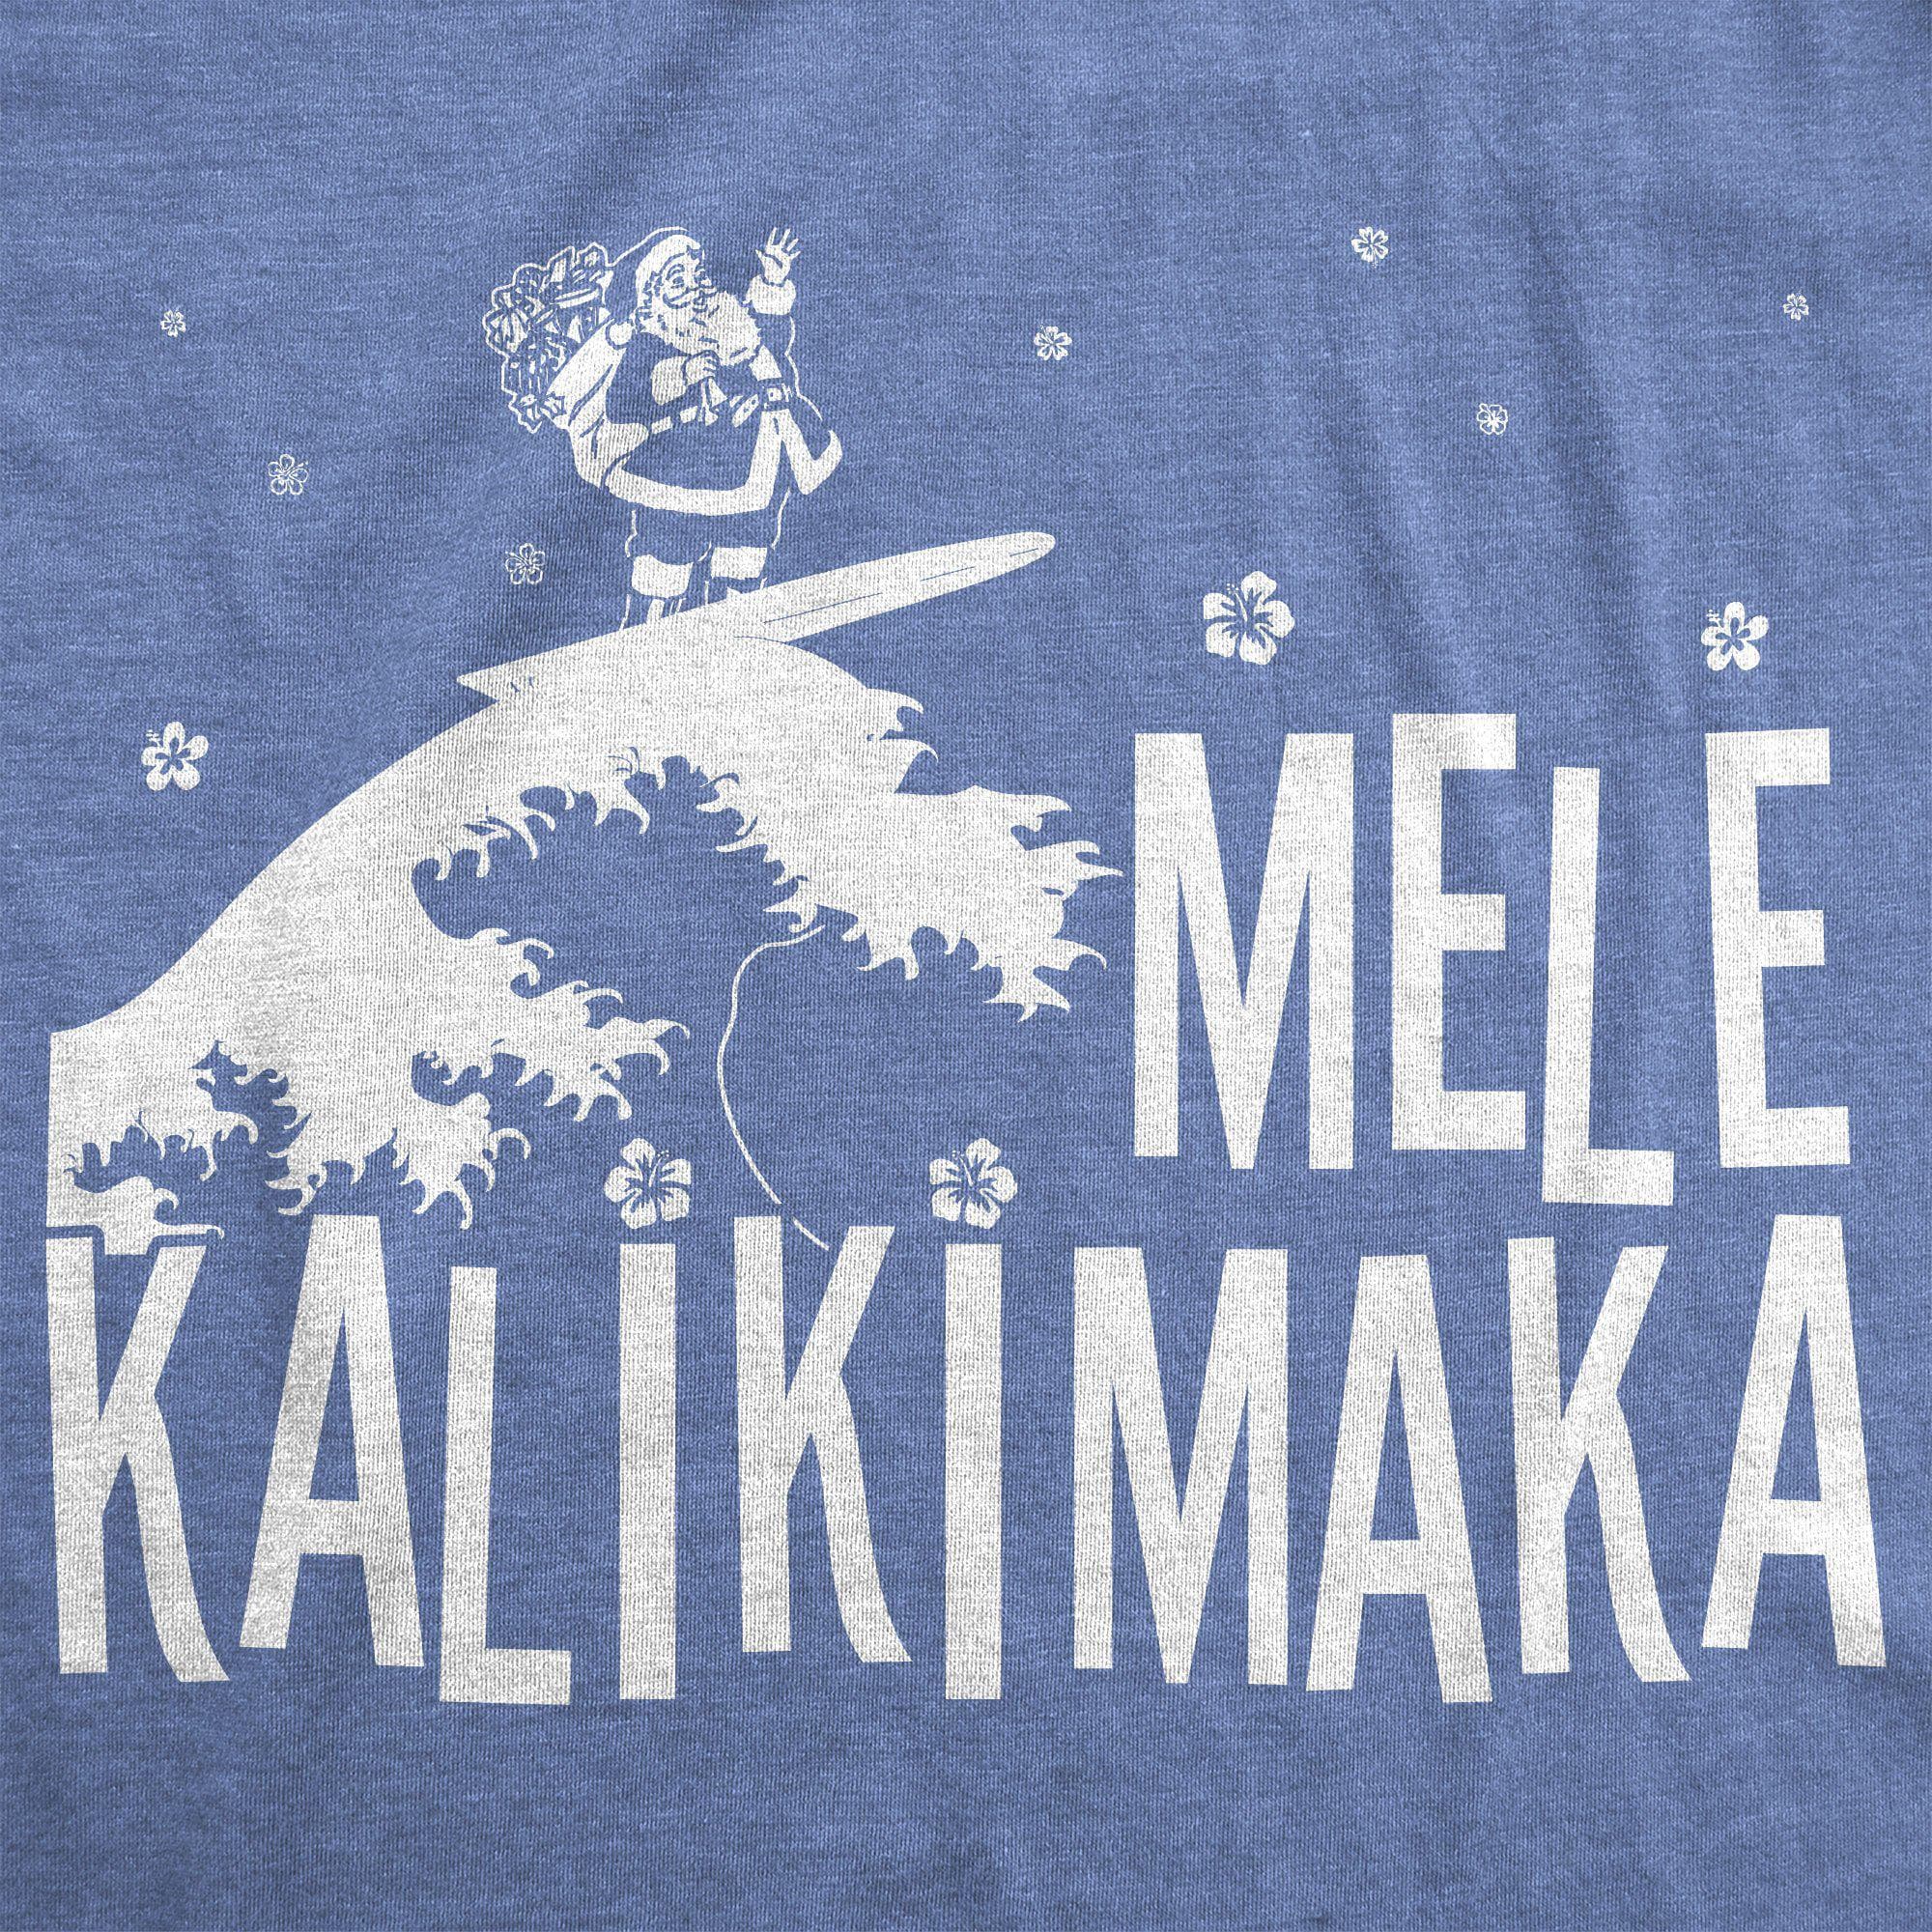 Mele Kalikimaka Men's Tshirt - Crazy Dog T-Shirts